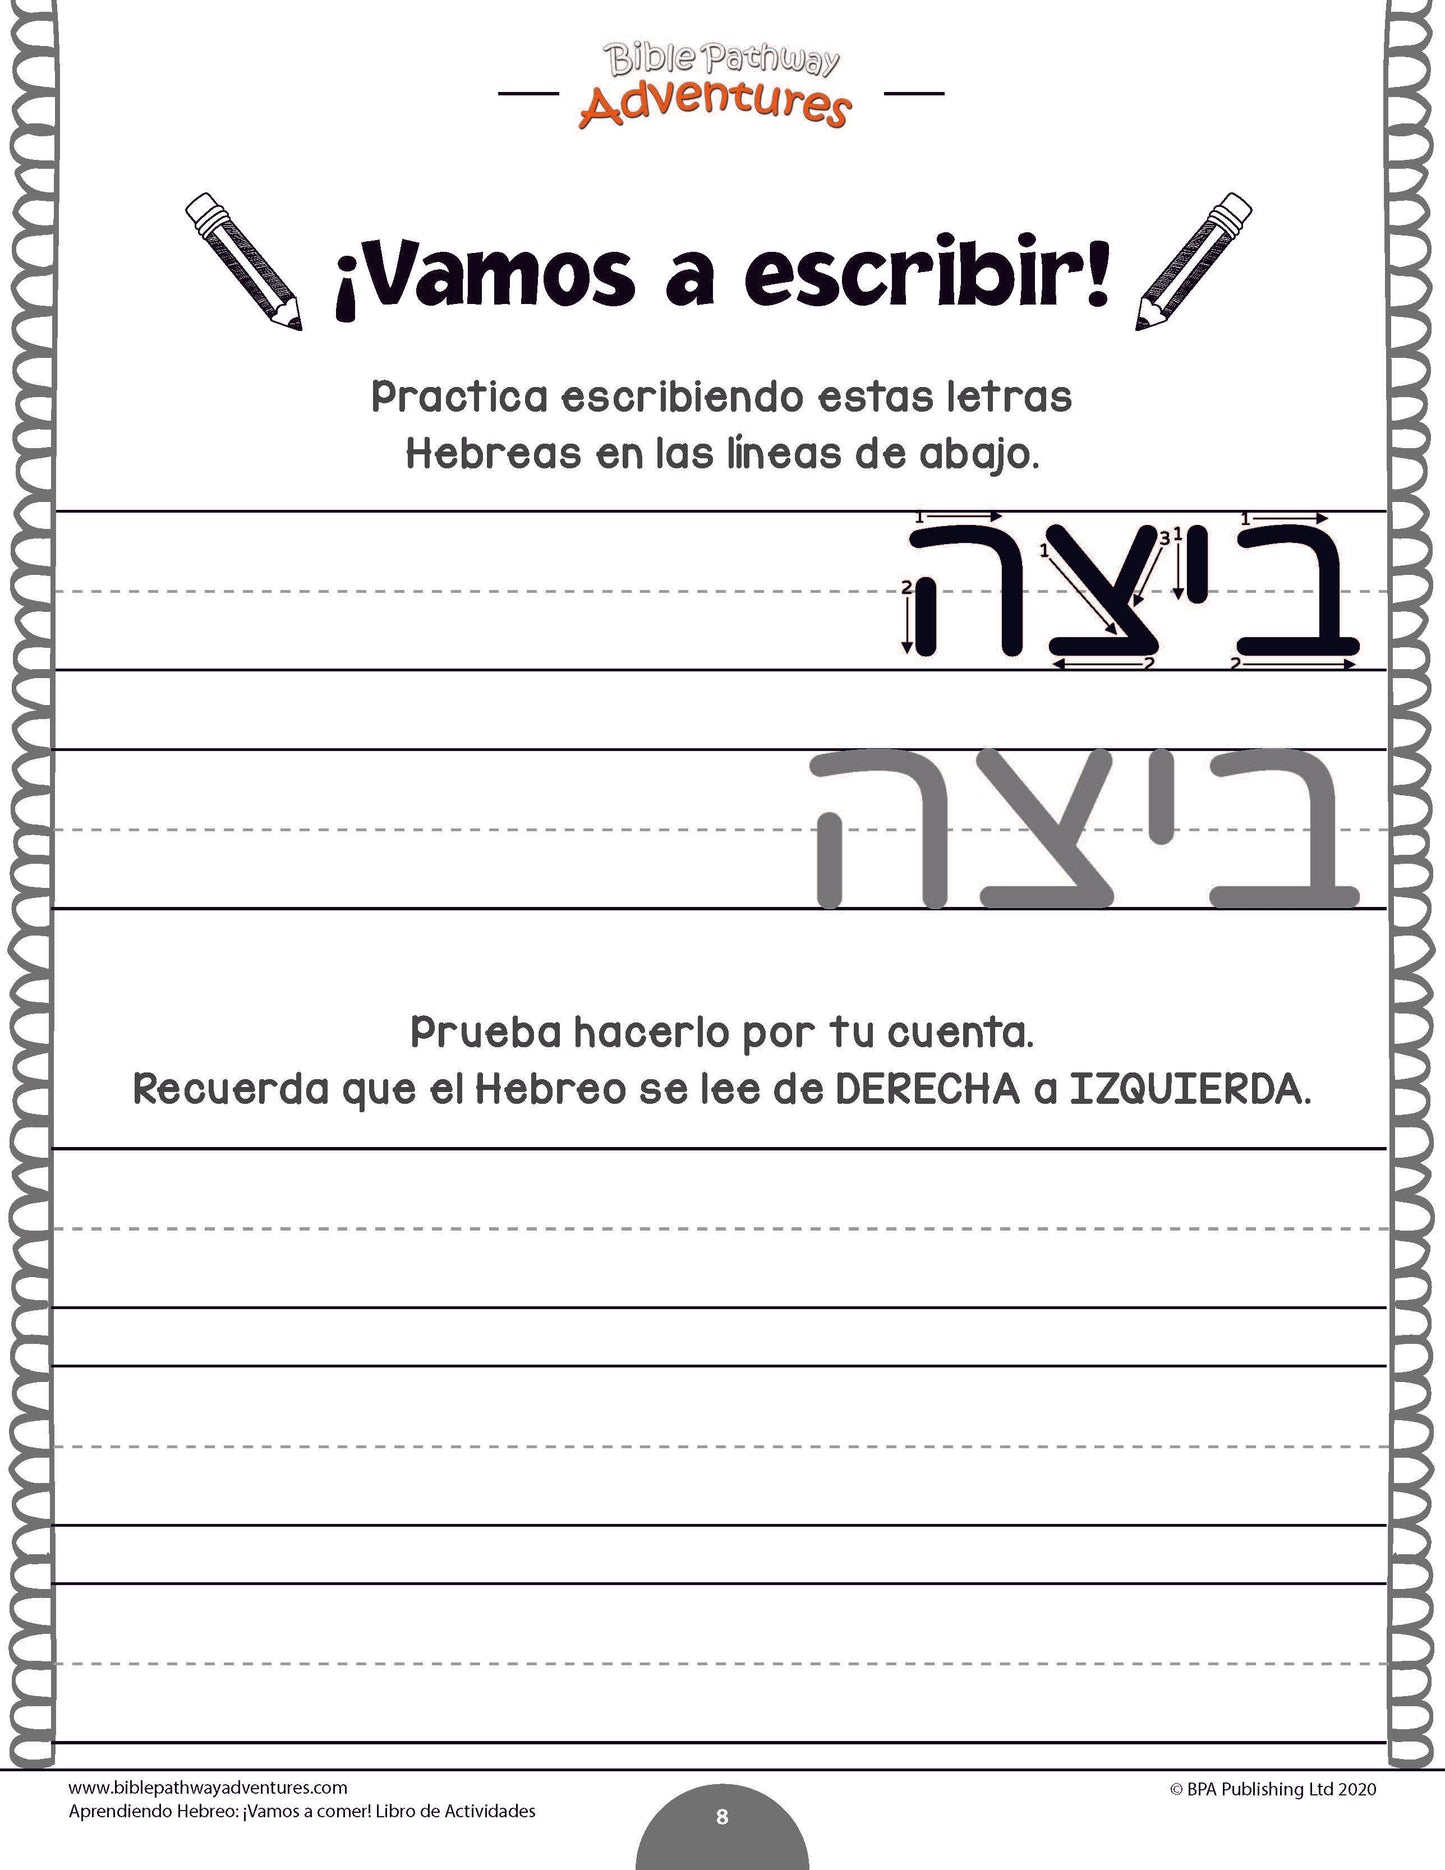 Aprendiendo Hebreo: ¡Vamos a comer! - Libro de actividades (paperback)